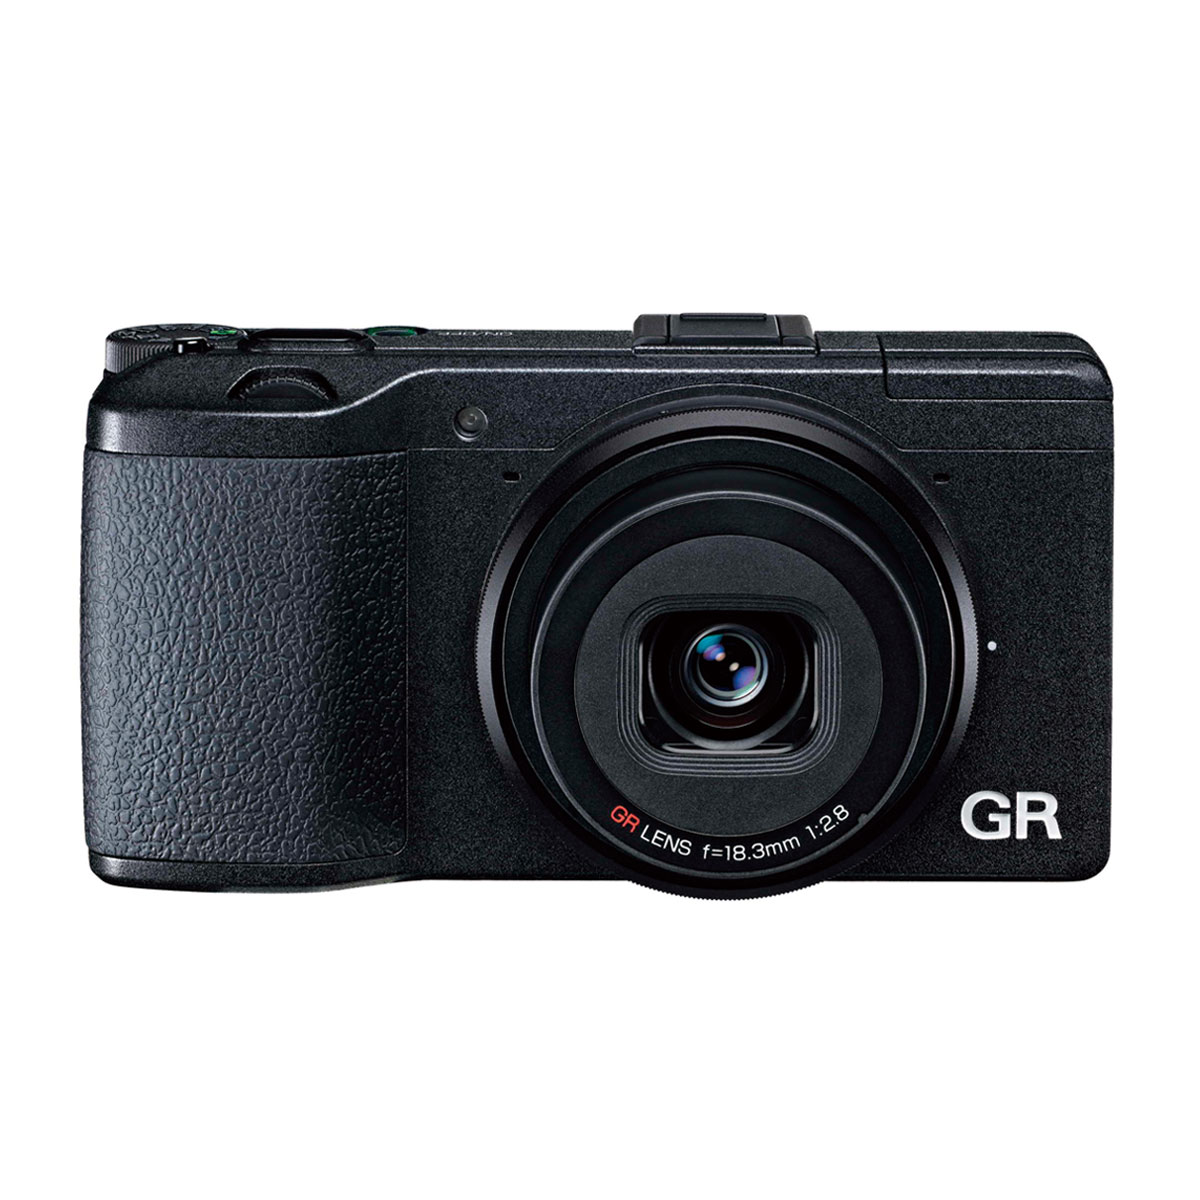 分期Ricoh/理光 gr普通便携数码相机可换镜头数码相机包邮